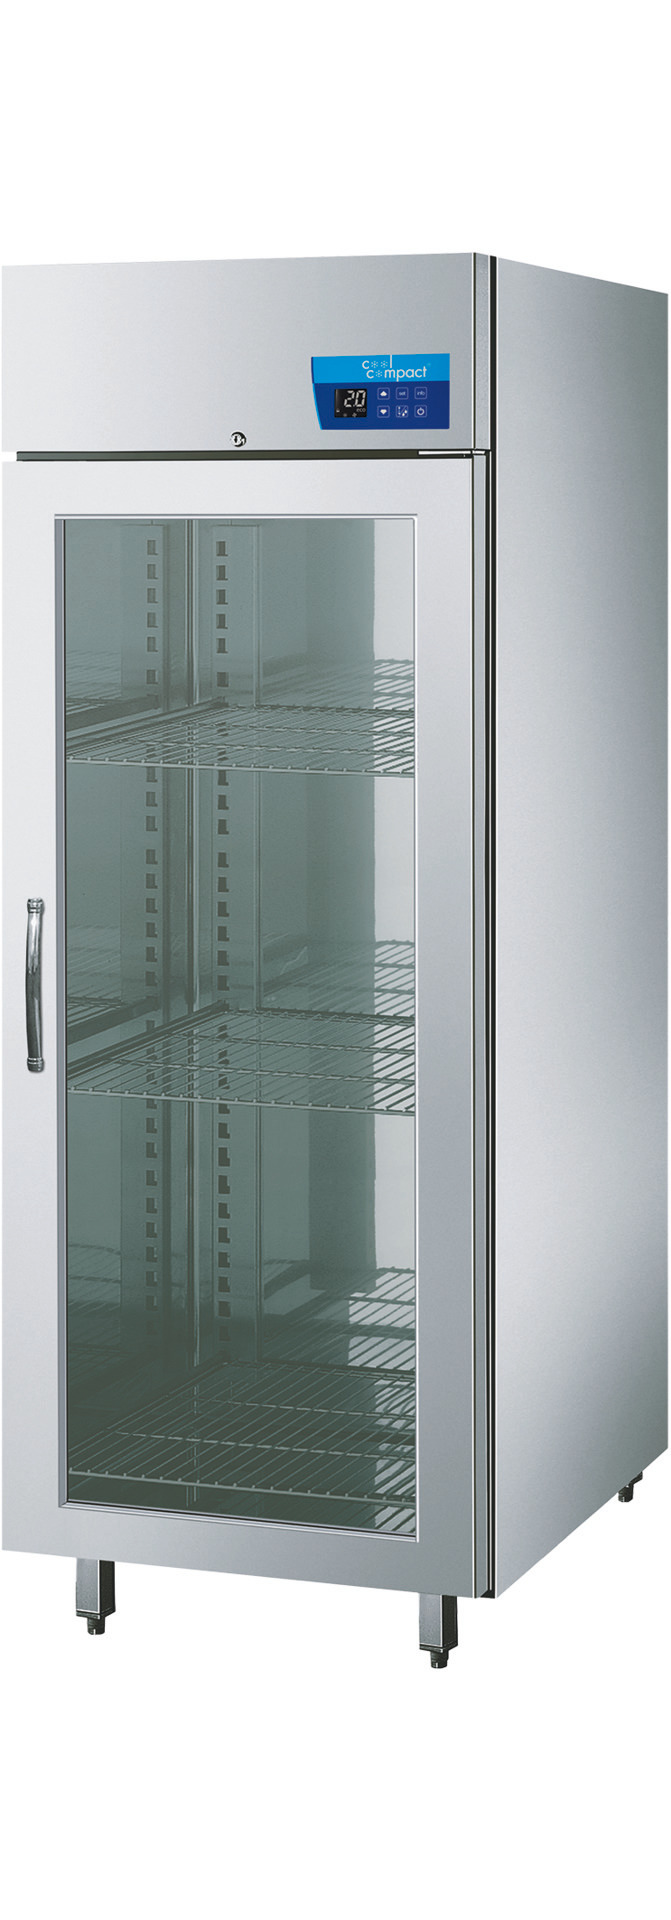 Umluft-Glastürtiefkühlschrank  21 x GN 1/1 / zentralgekühlt